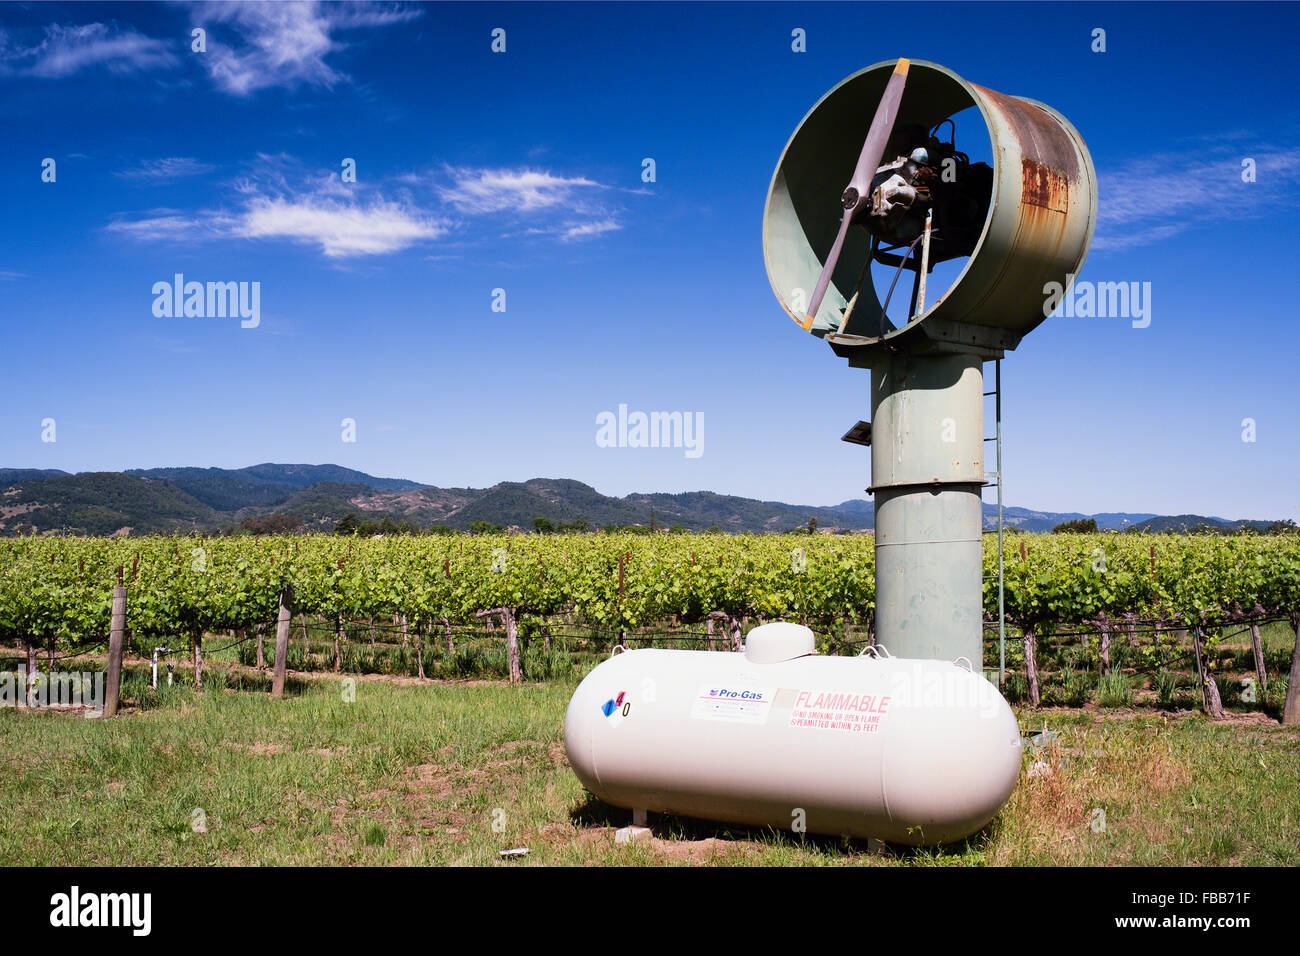 Angolo basso in prospettiva di una macchina di vento in un vigneto, Calistoga, Napa Valley, California Foto Stock